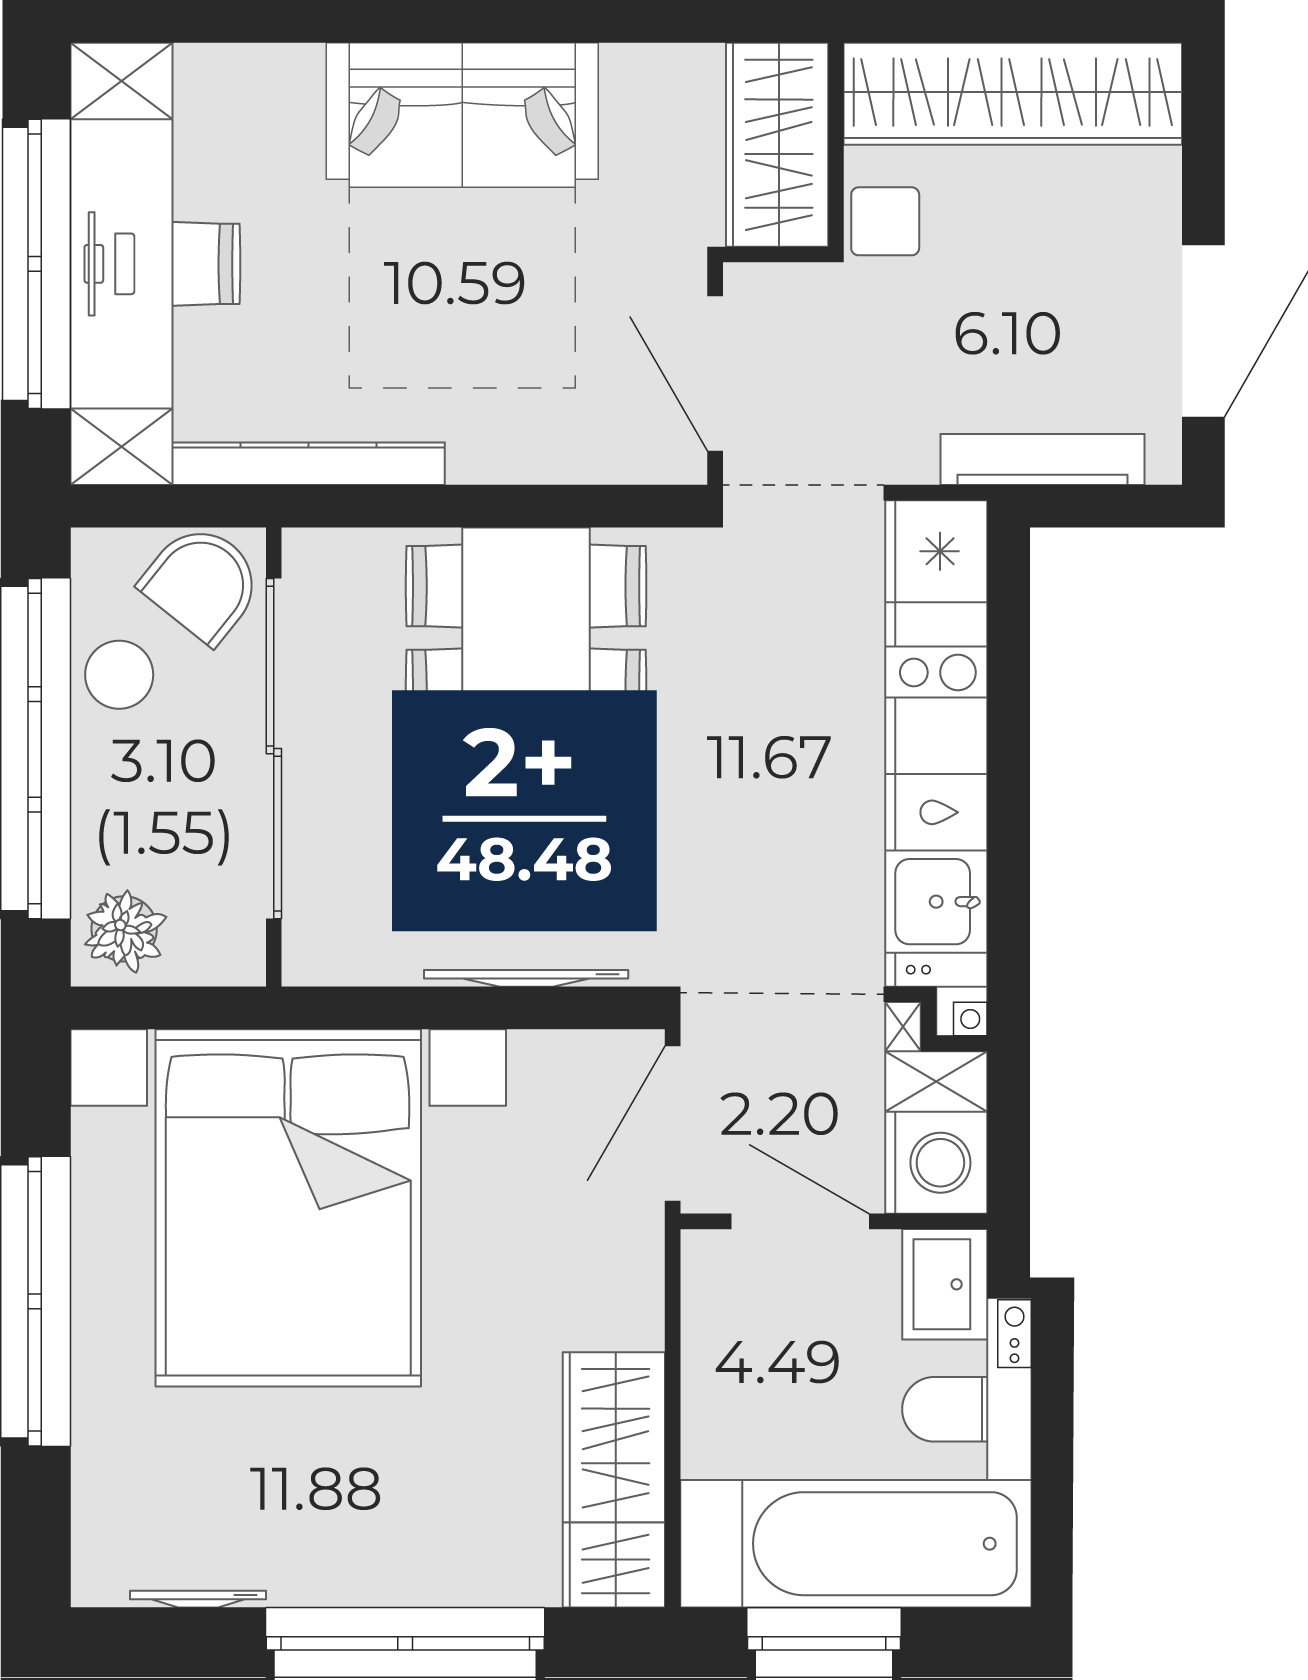 Квартира № 88, 2-комнатная, 48.48 кв. м, 9 этаж